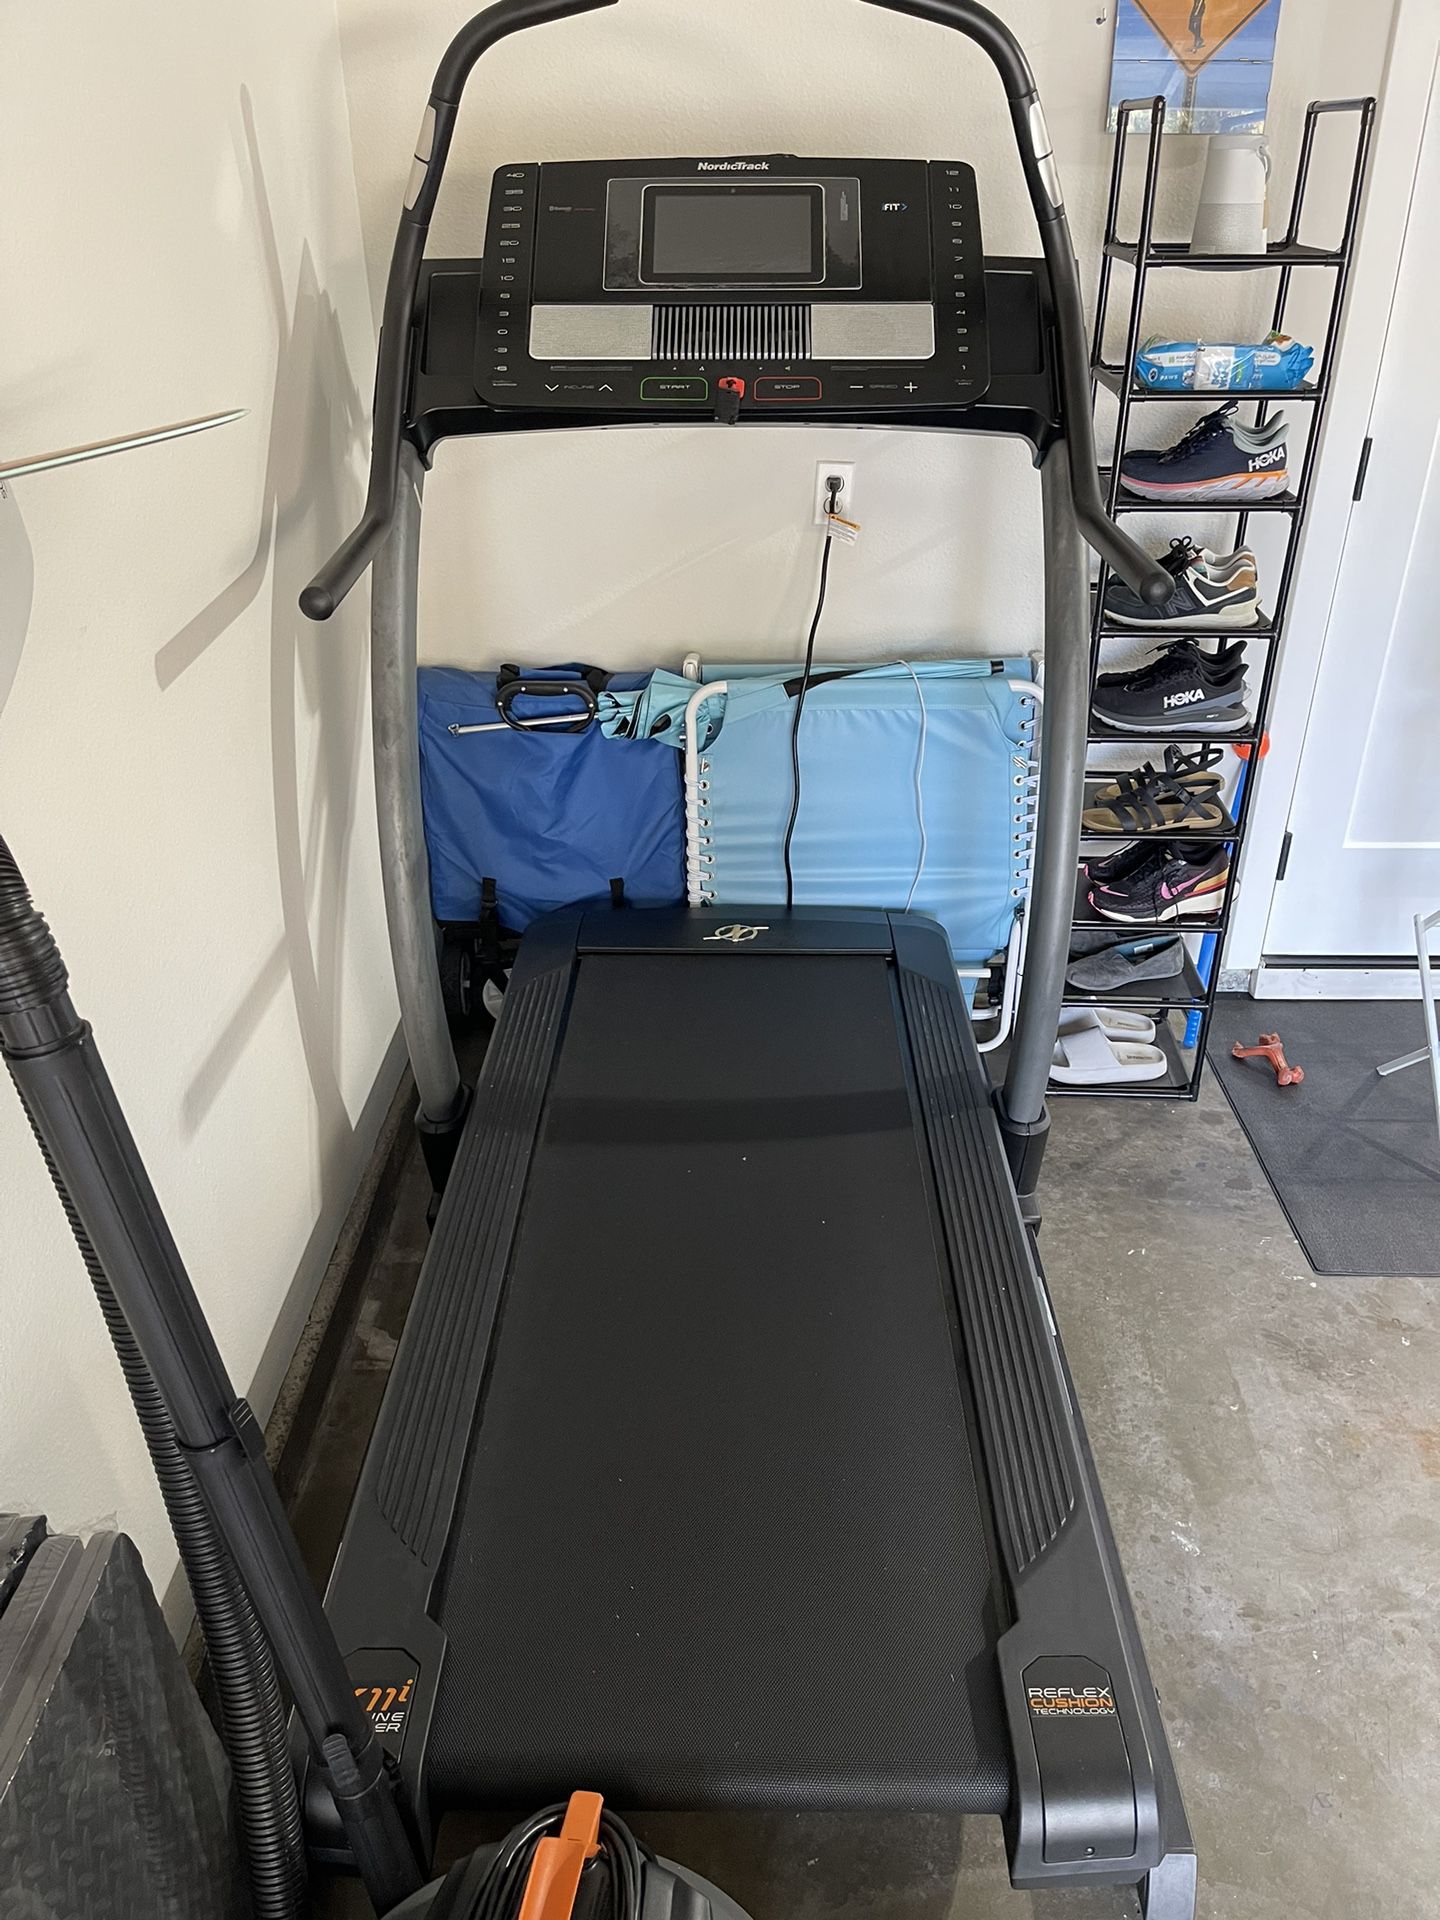 Nordictrack Treadmill X11i - $900